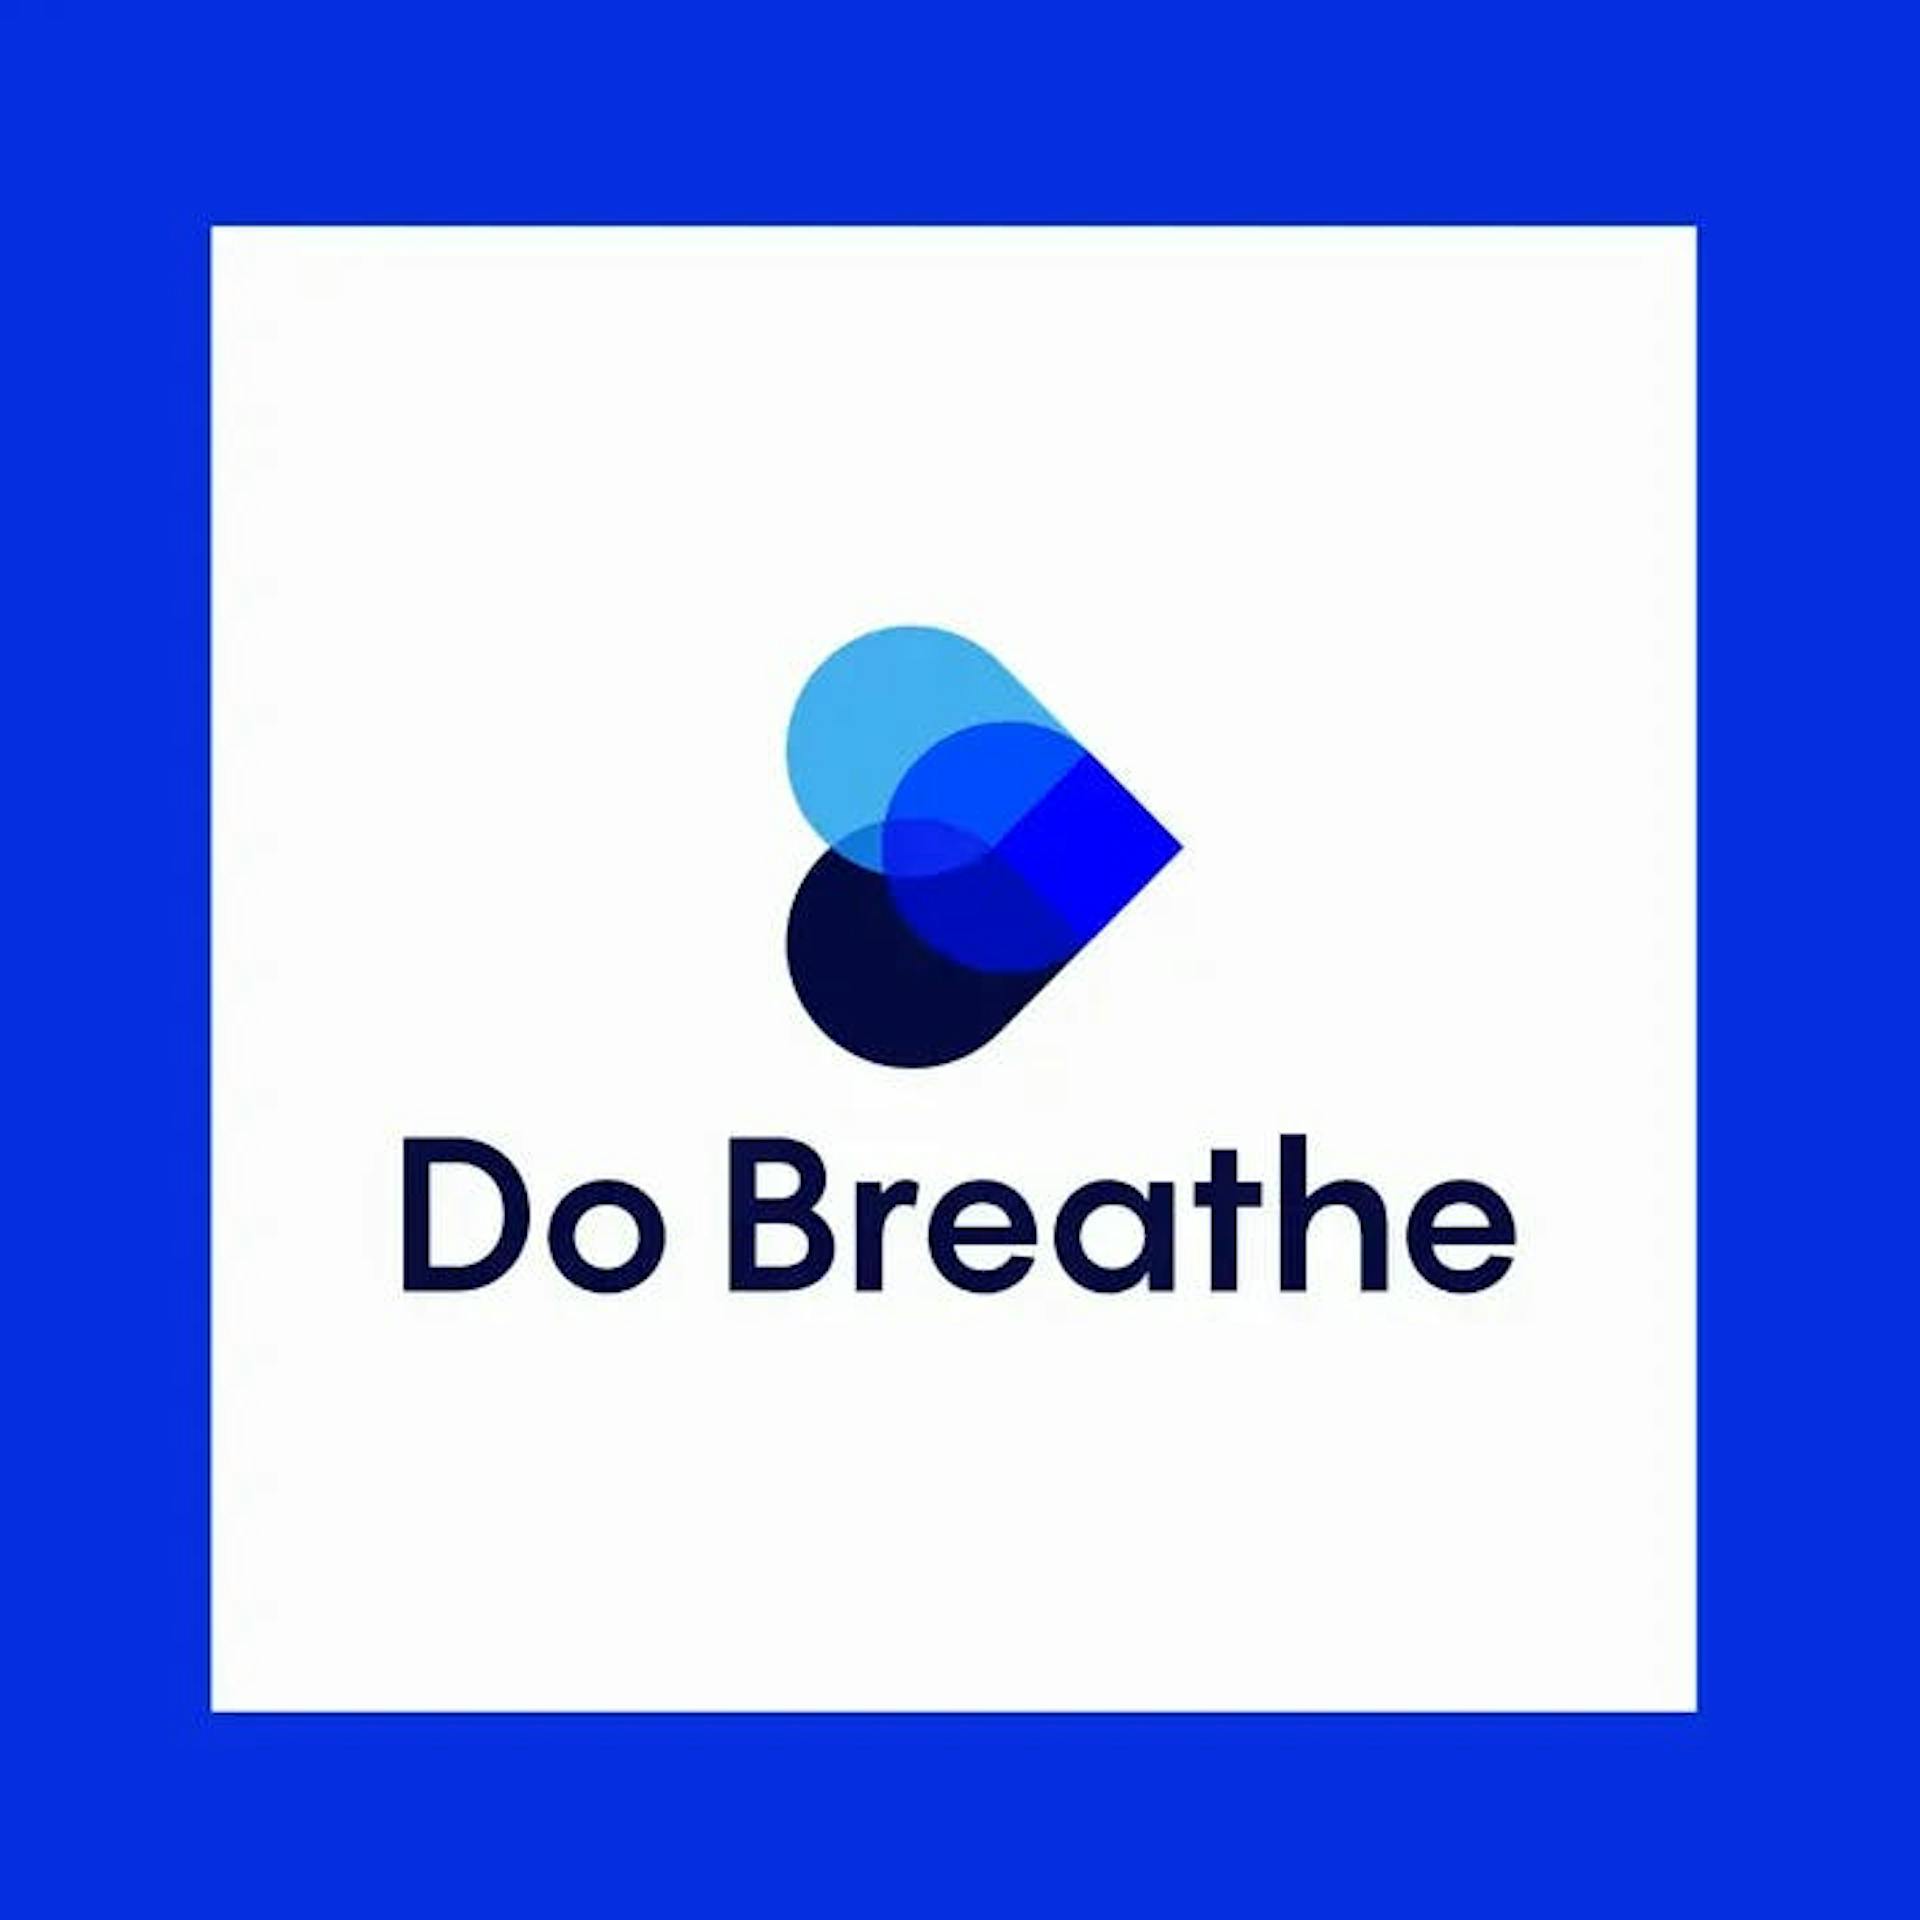 Do Breathe